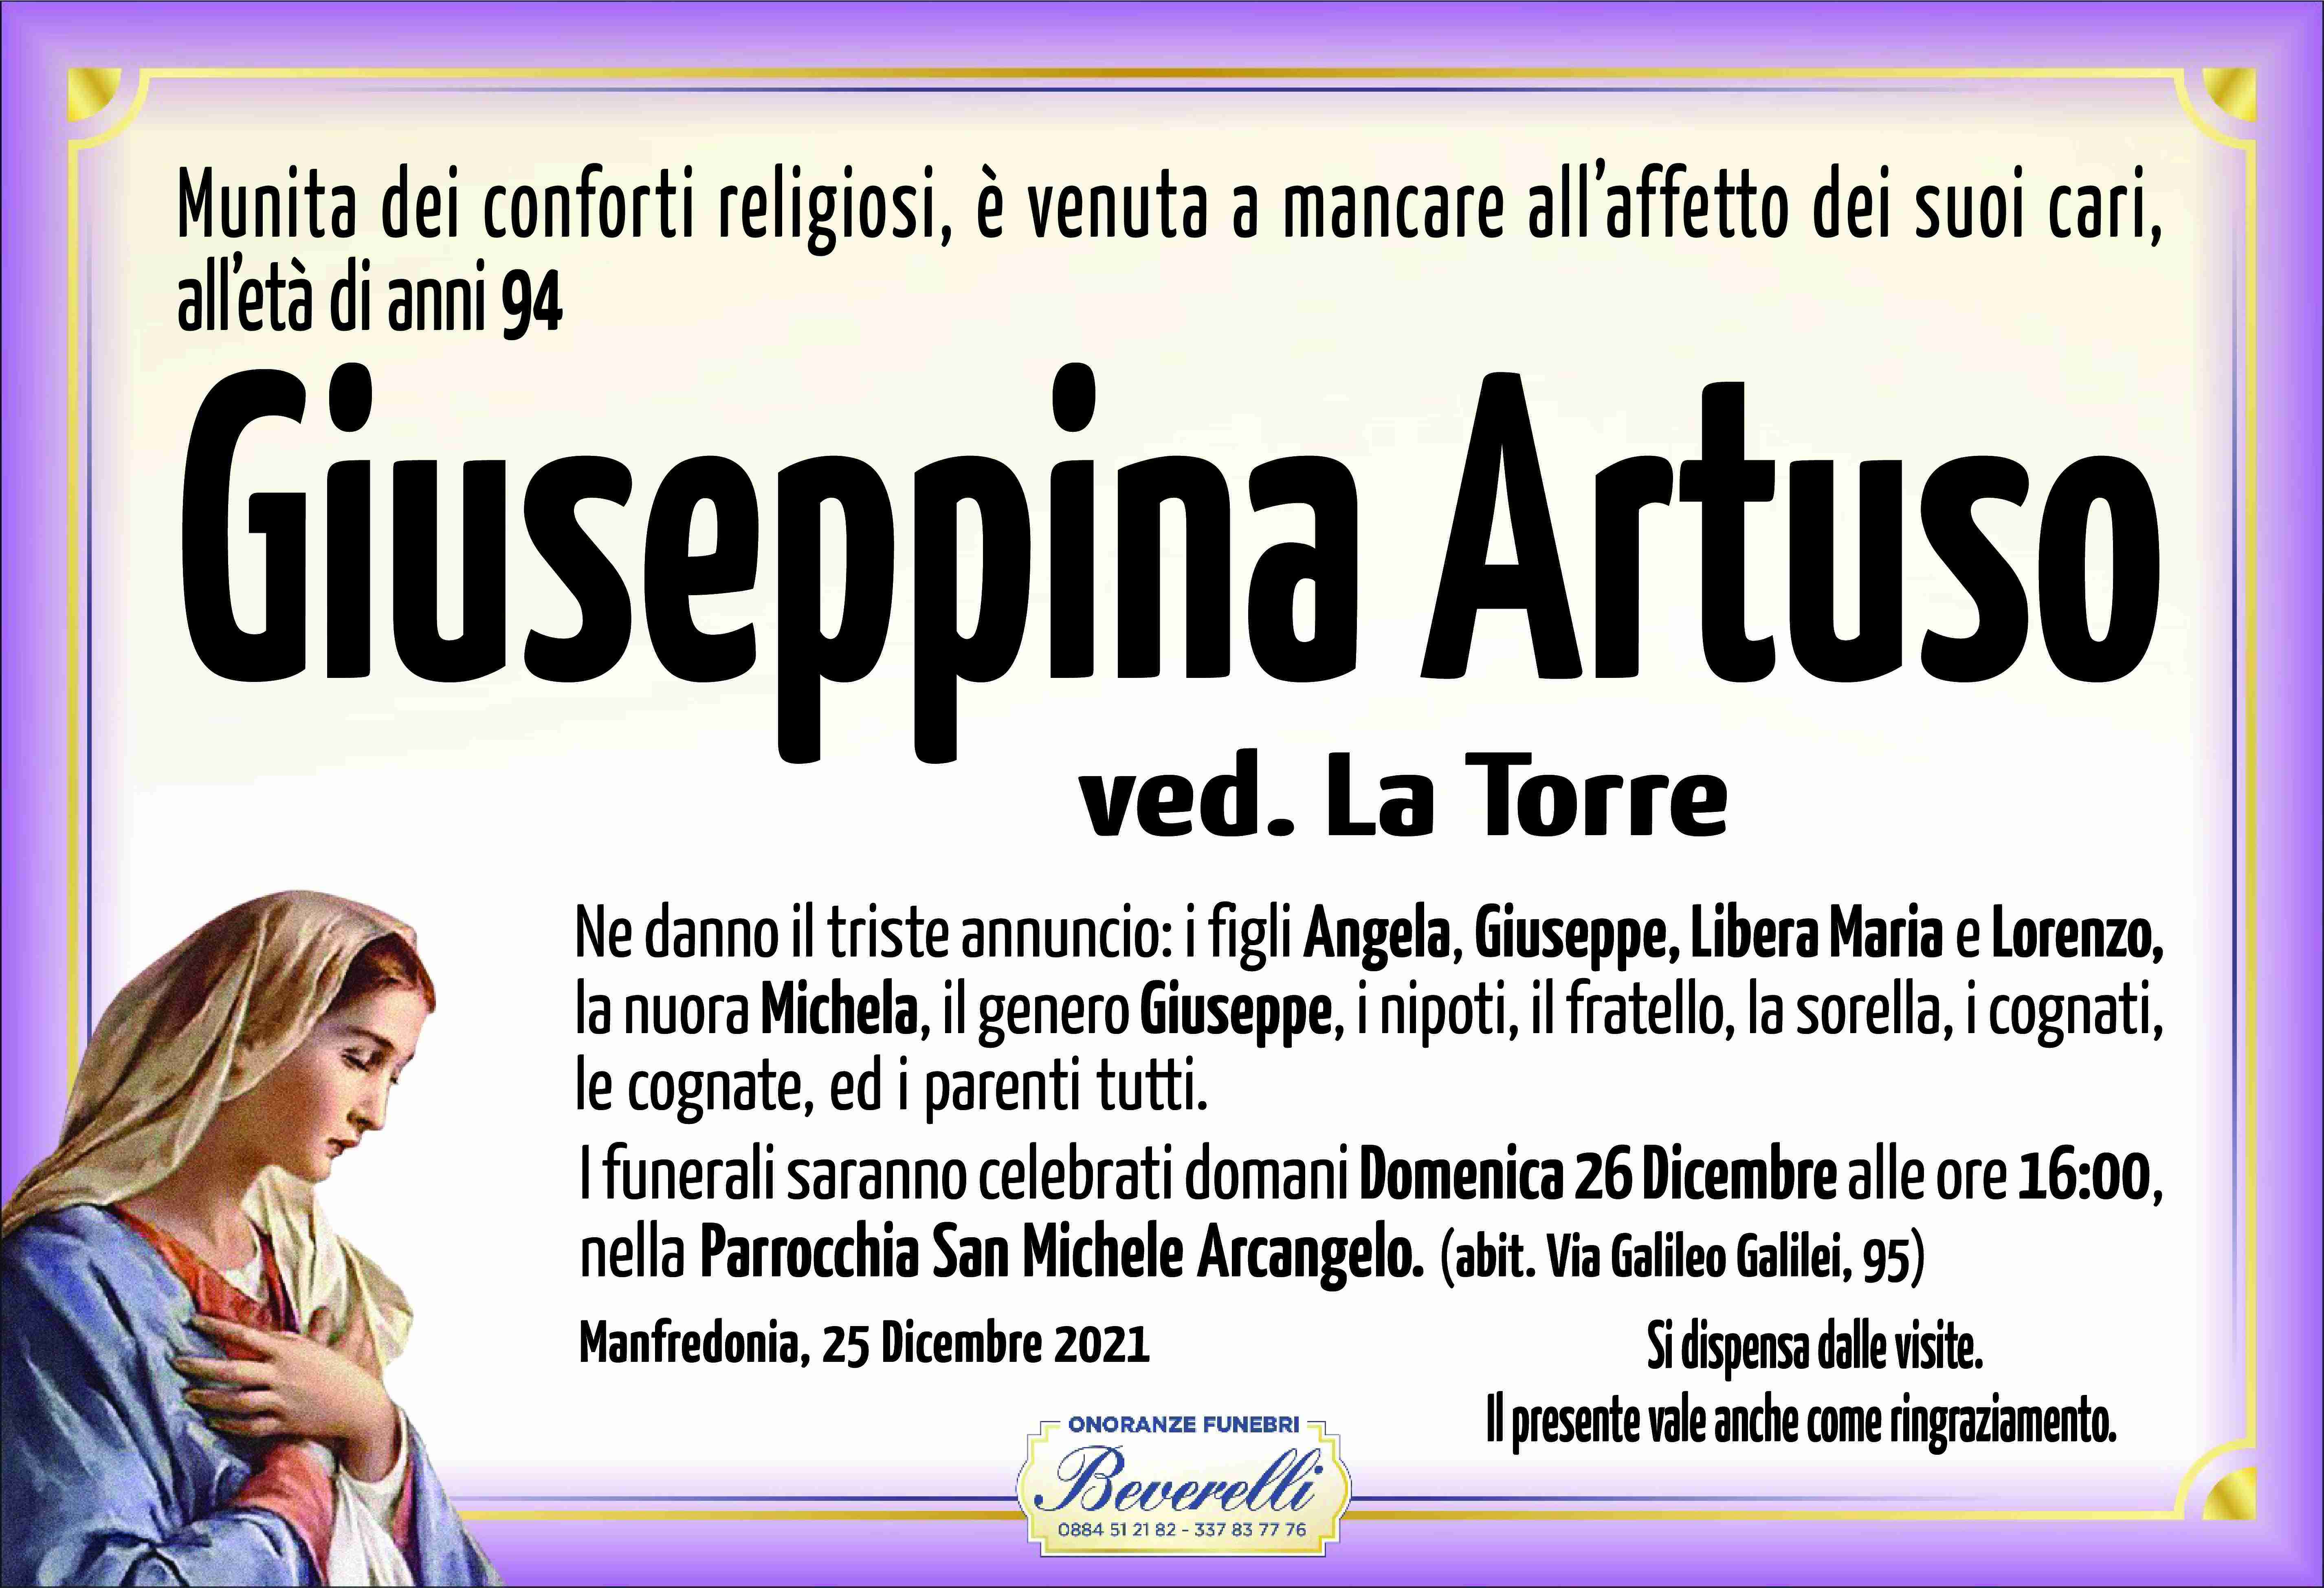 Giuseppina Artuso